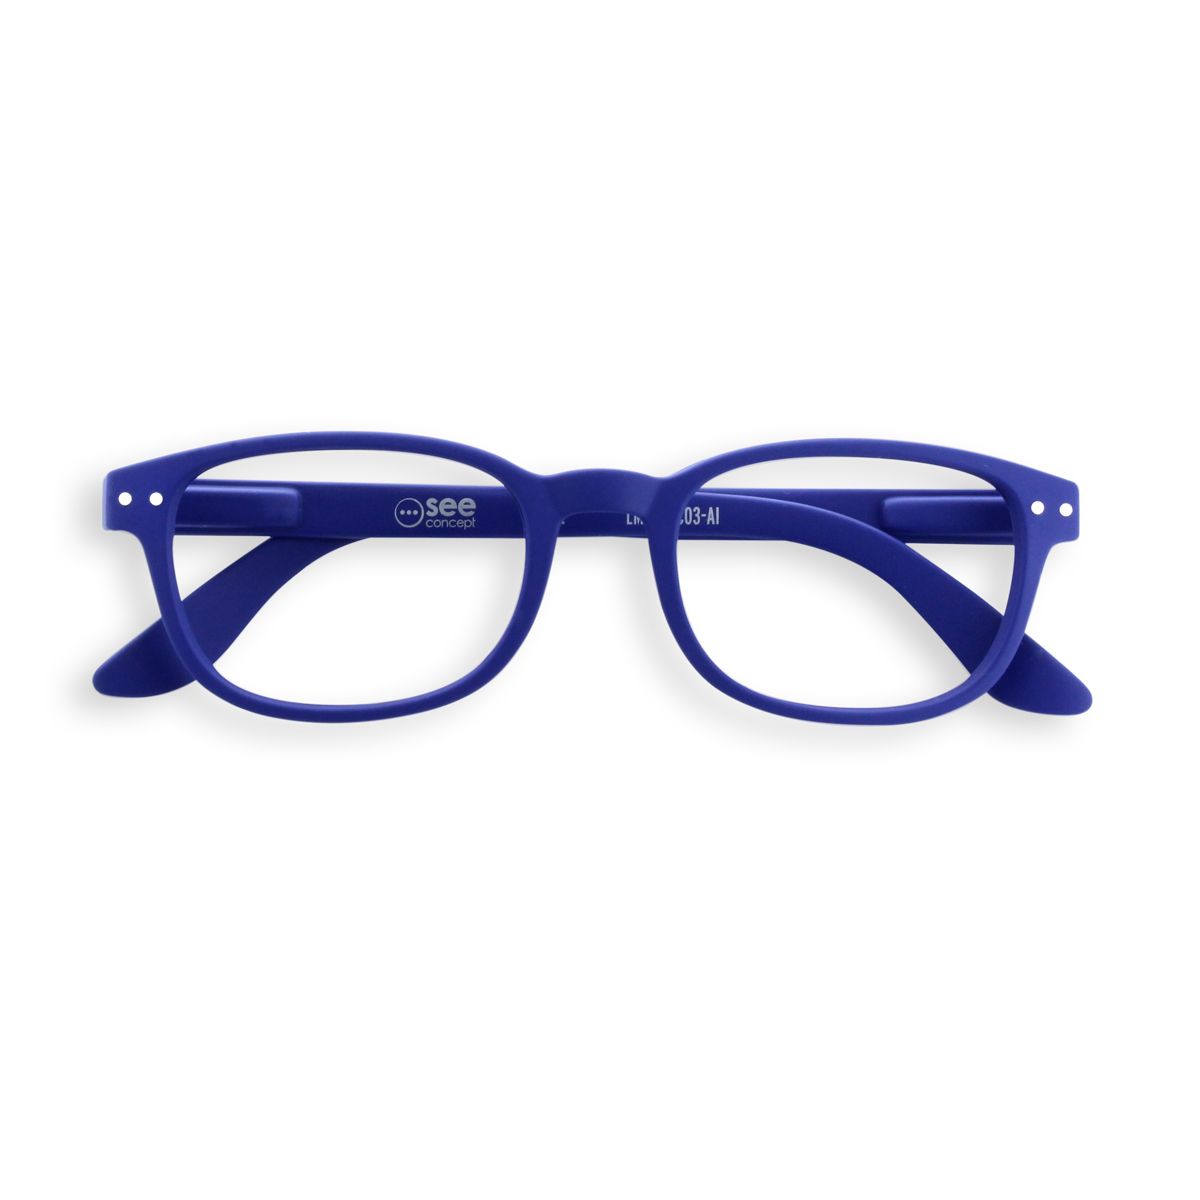 L'opticien Visu'elles propose les collections française de lunettes du créateur THIERRY LASRY hommes et femmes